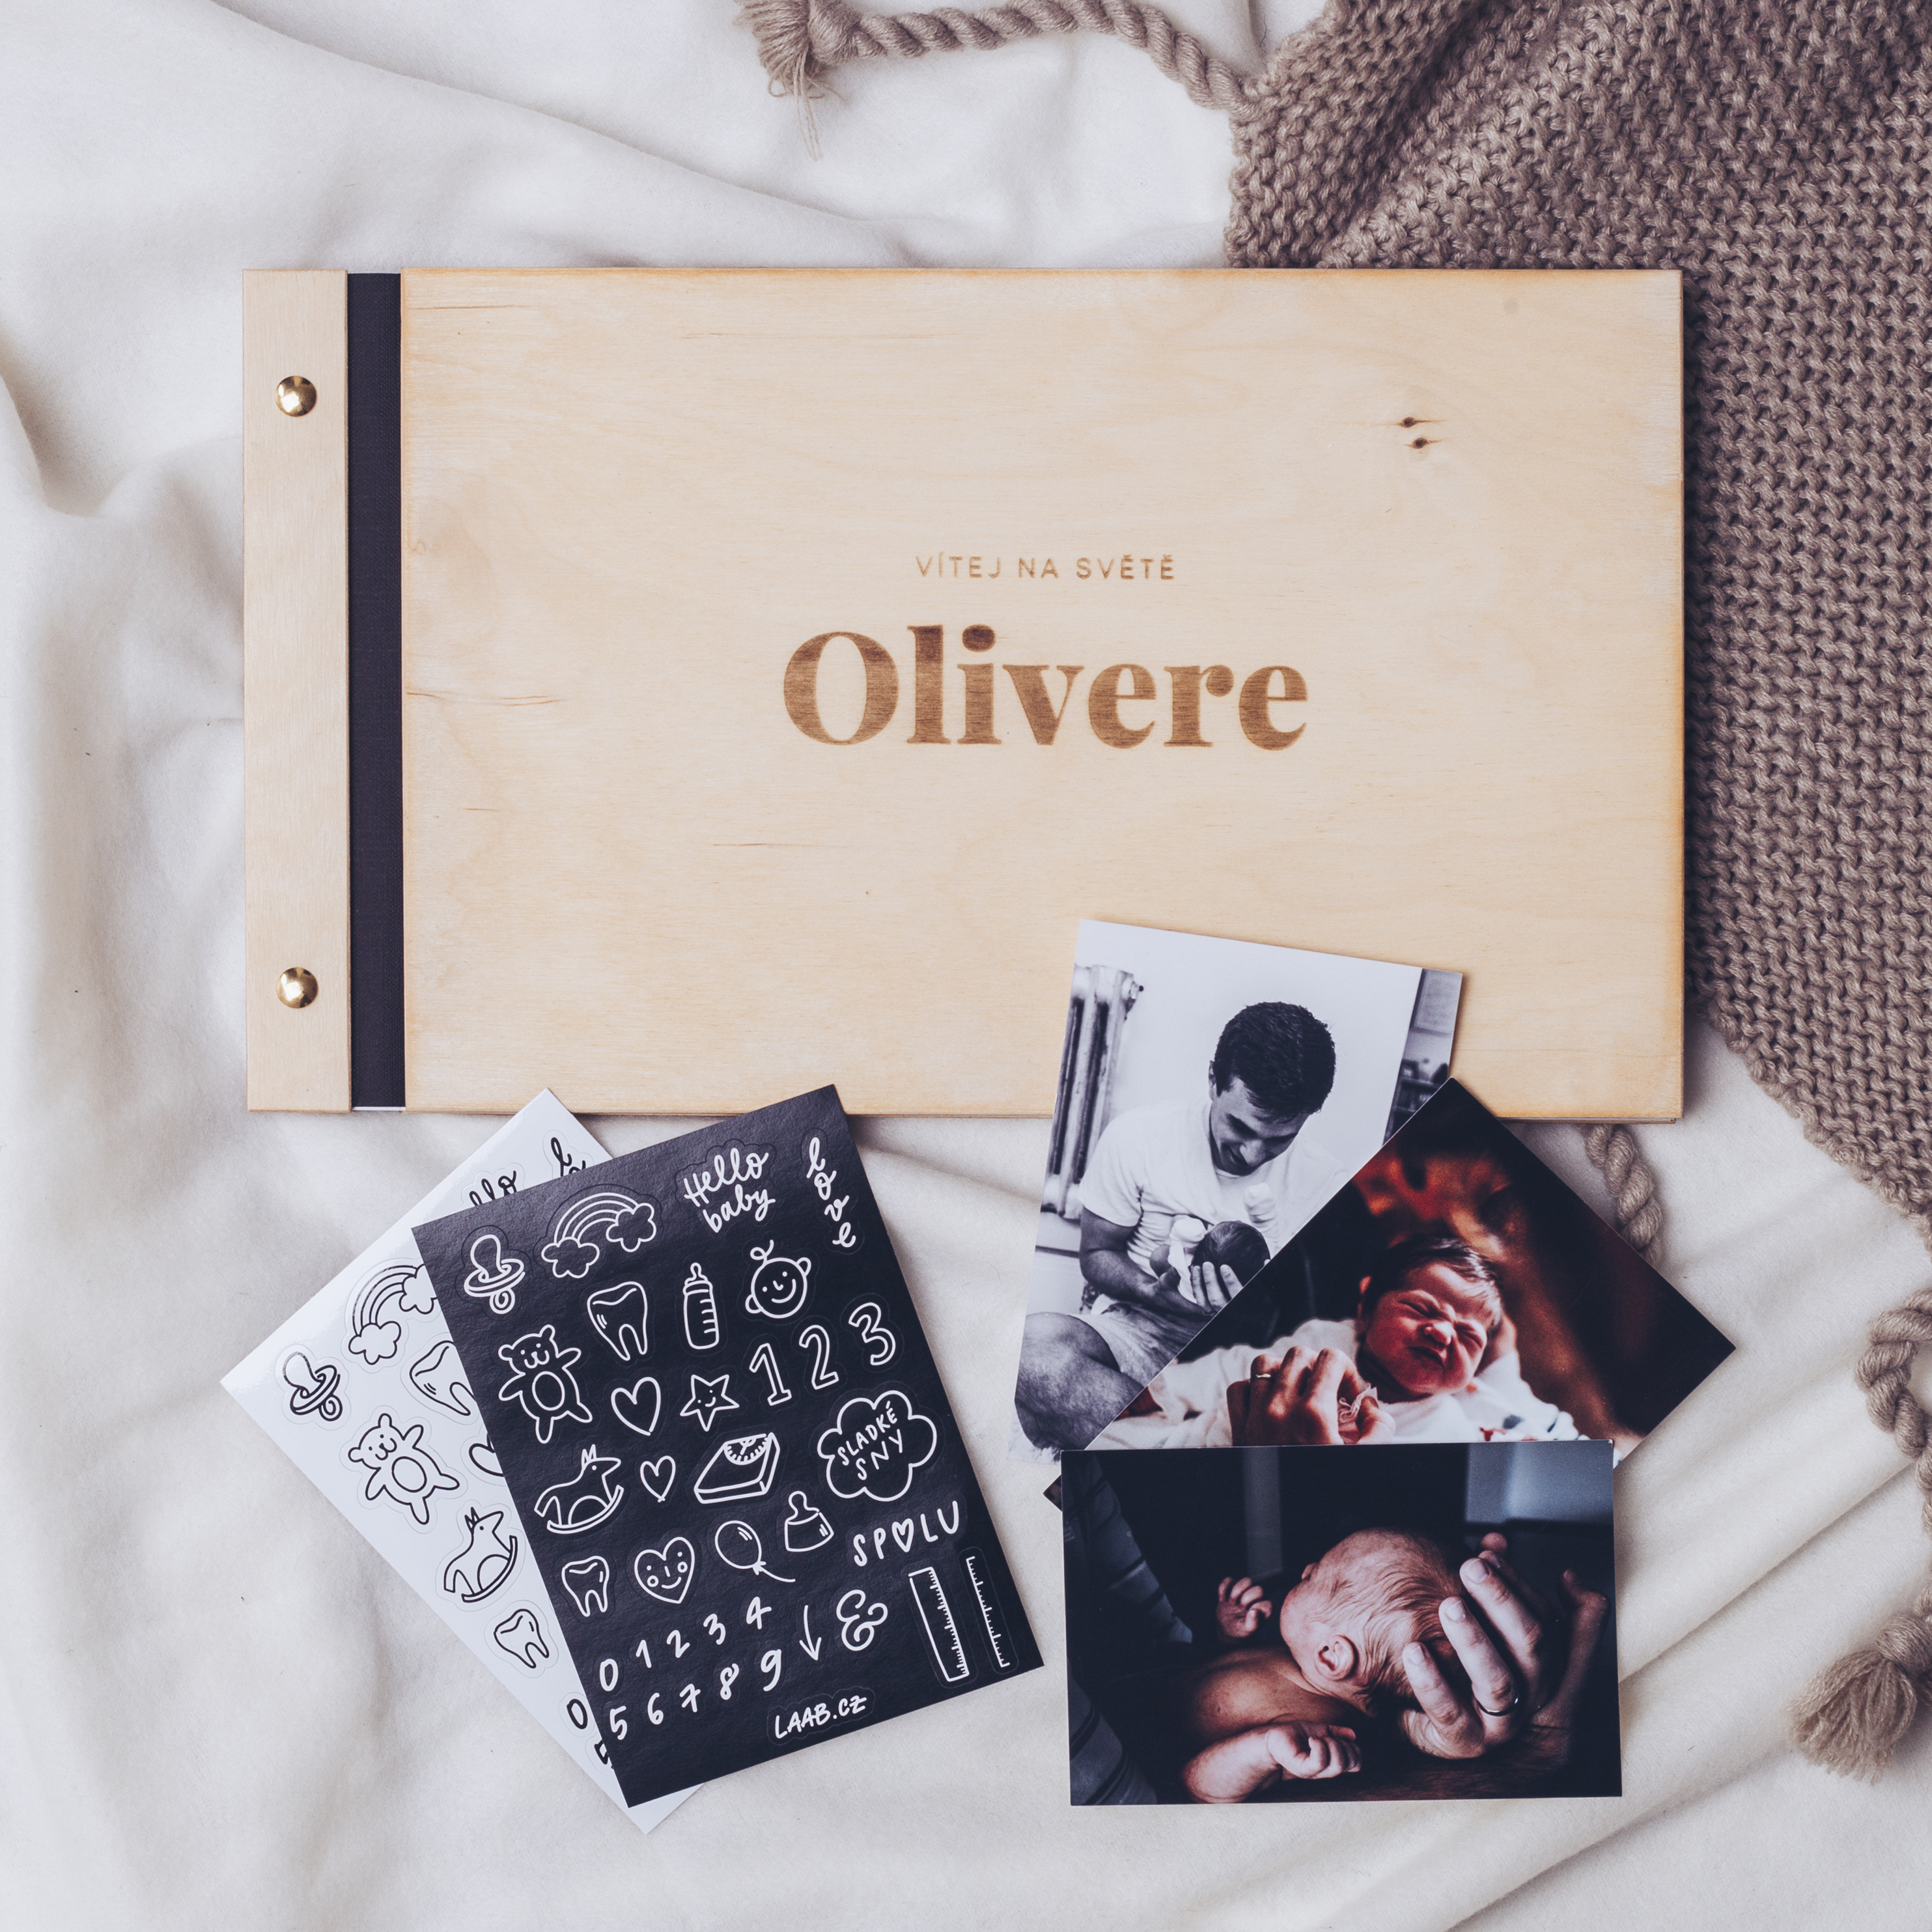 dřevěné fotoalbum Oliver: FORMÁT FOTOALBA na šířku, POČET LISTŮ 25 s prokladovými listy, FORMÁT FOTOALBA čtverec, POČET LISTŮ 30 s prokladovými listy, BARVA LISTŮ bílá